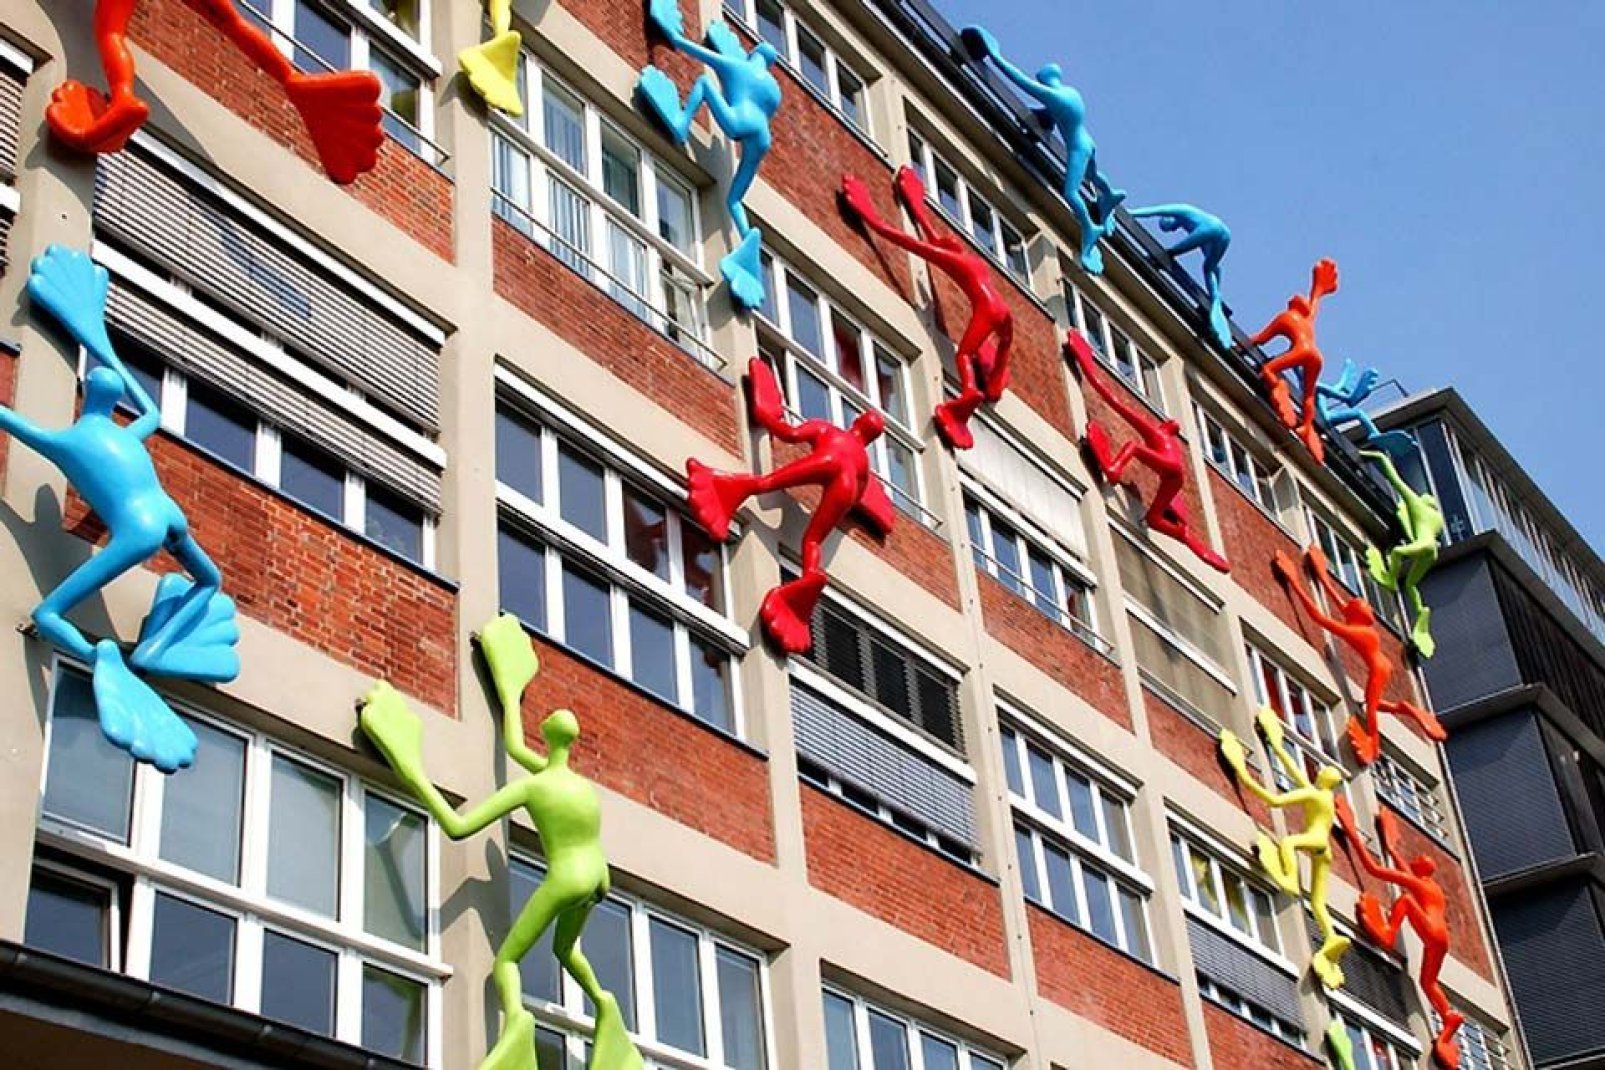 The façade climbers in Düsseldorf ascending business buildings.